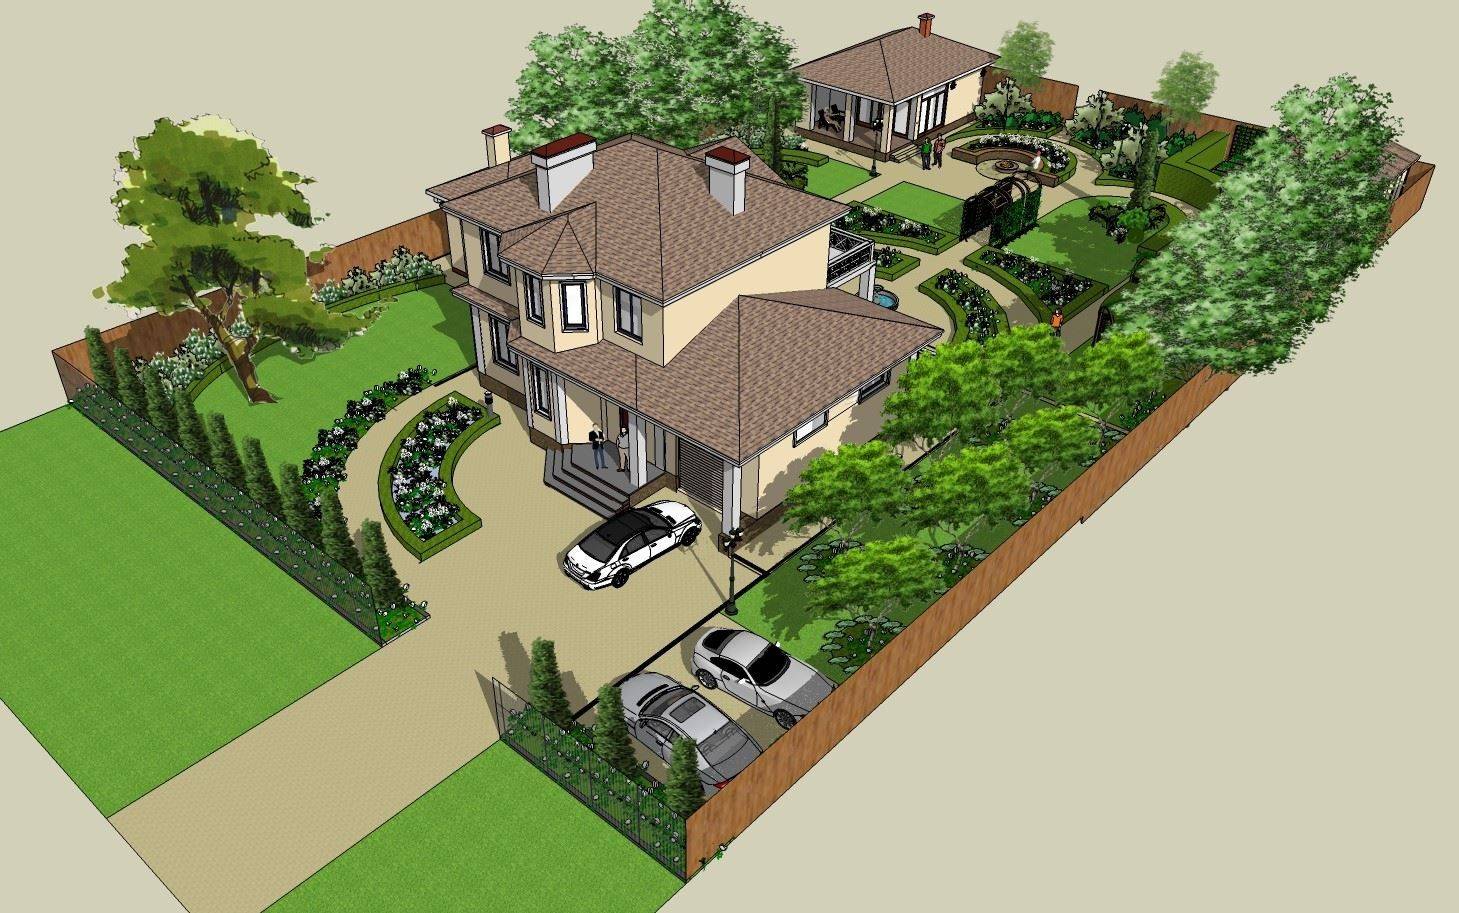 Планировка участка 12 соток: схема, варианты проекта с домом, баней и гаражом